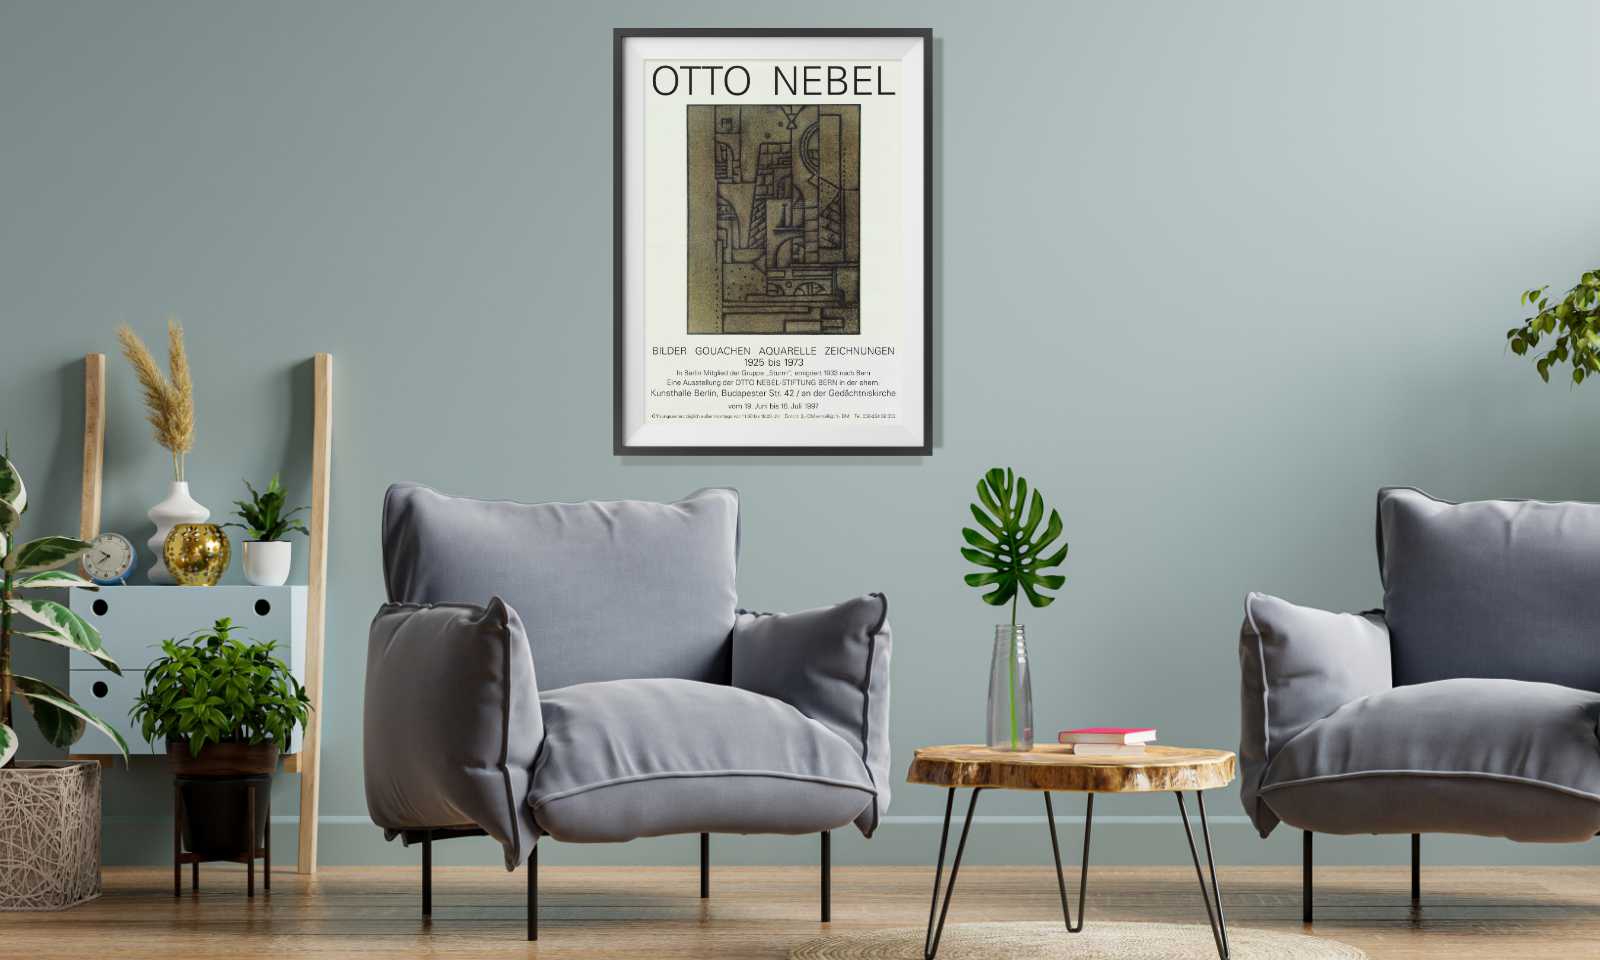 Otto Nebel - Bilder, Gouachen, Aquarelle, Zeichnungen (1925-1973), Otto-Nebel-Stiftung Bern, 1997